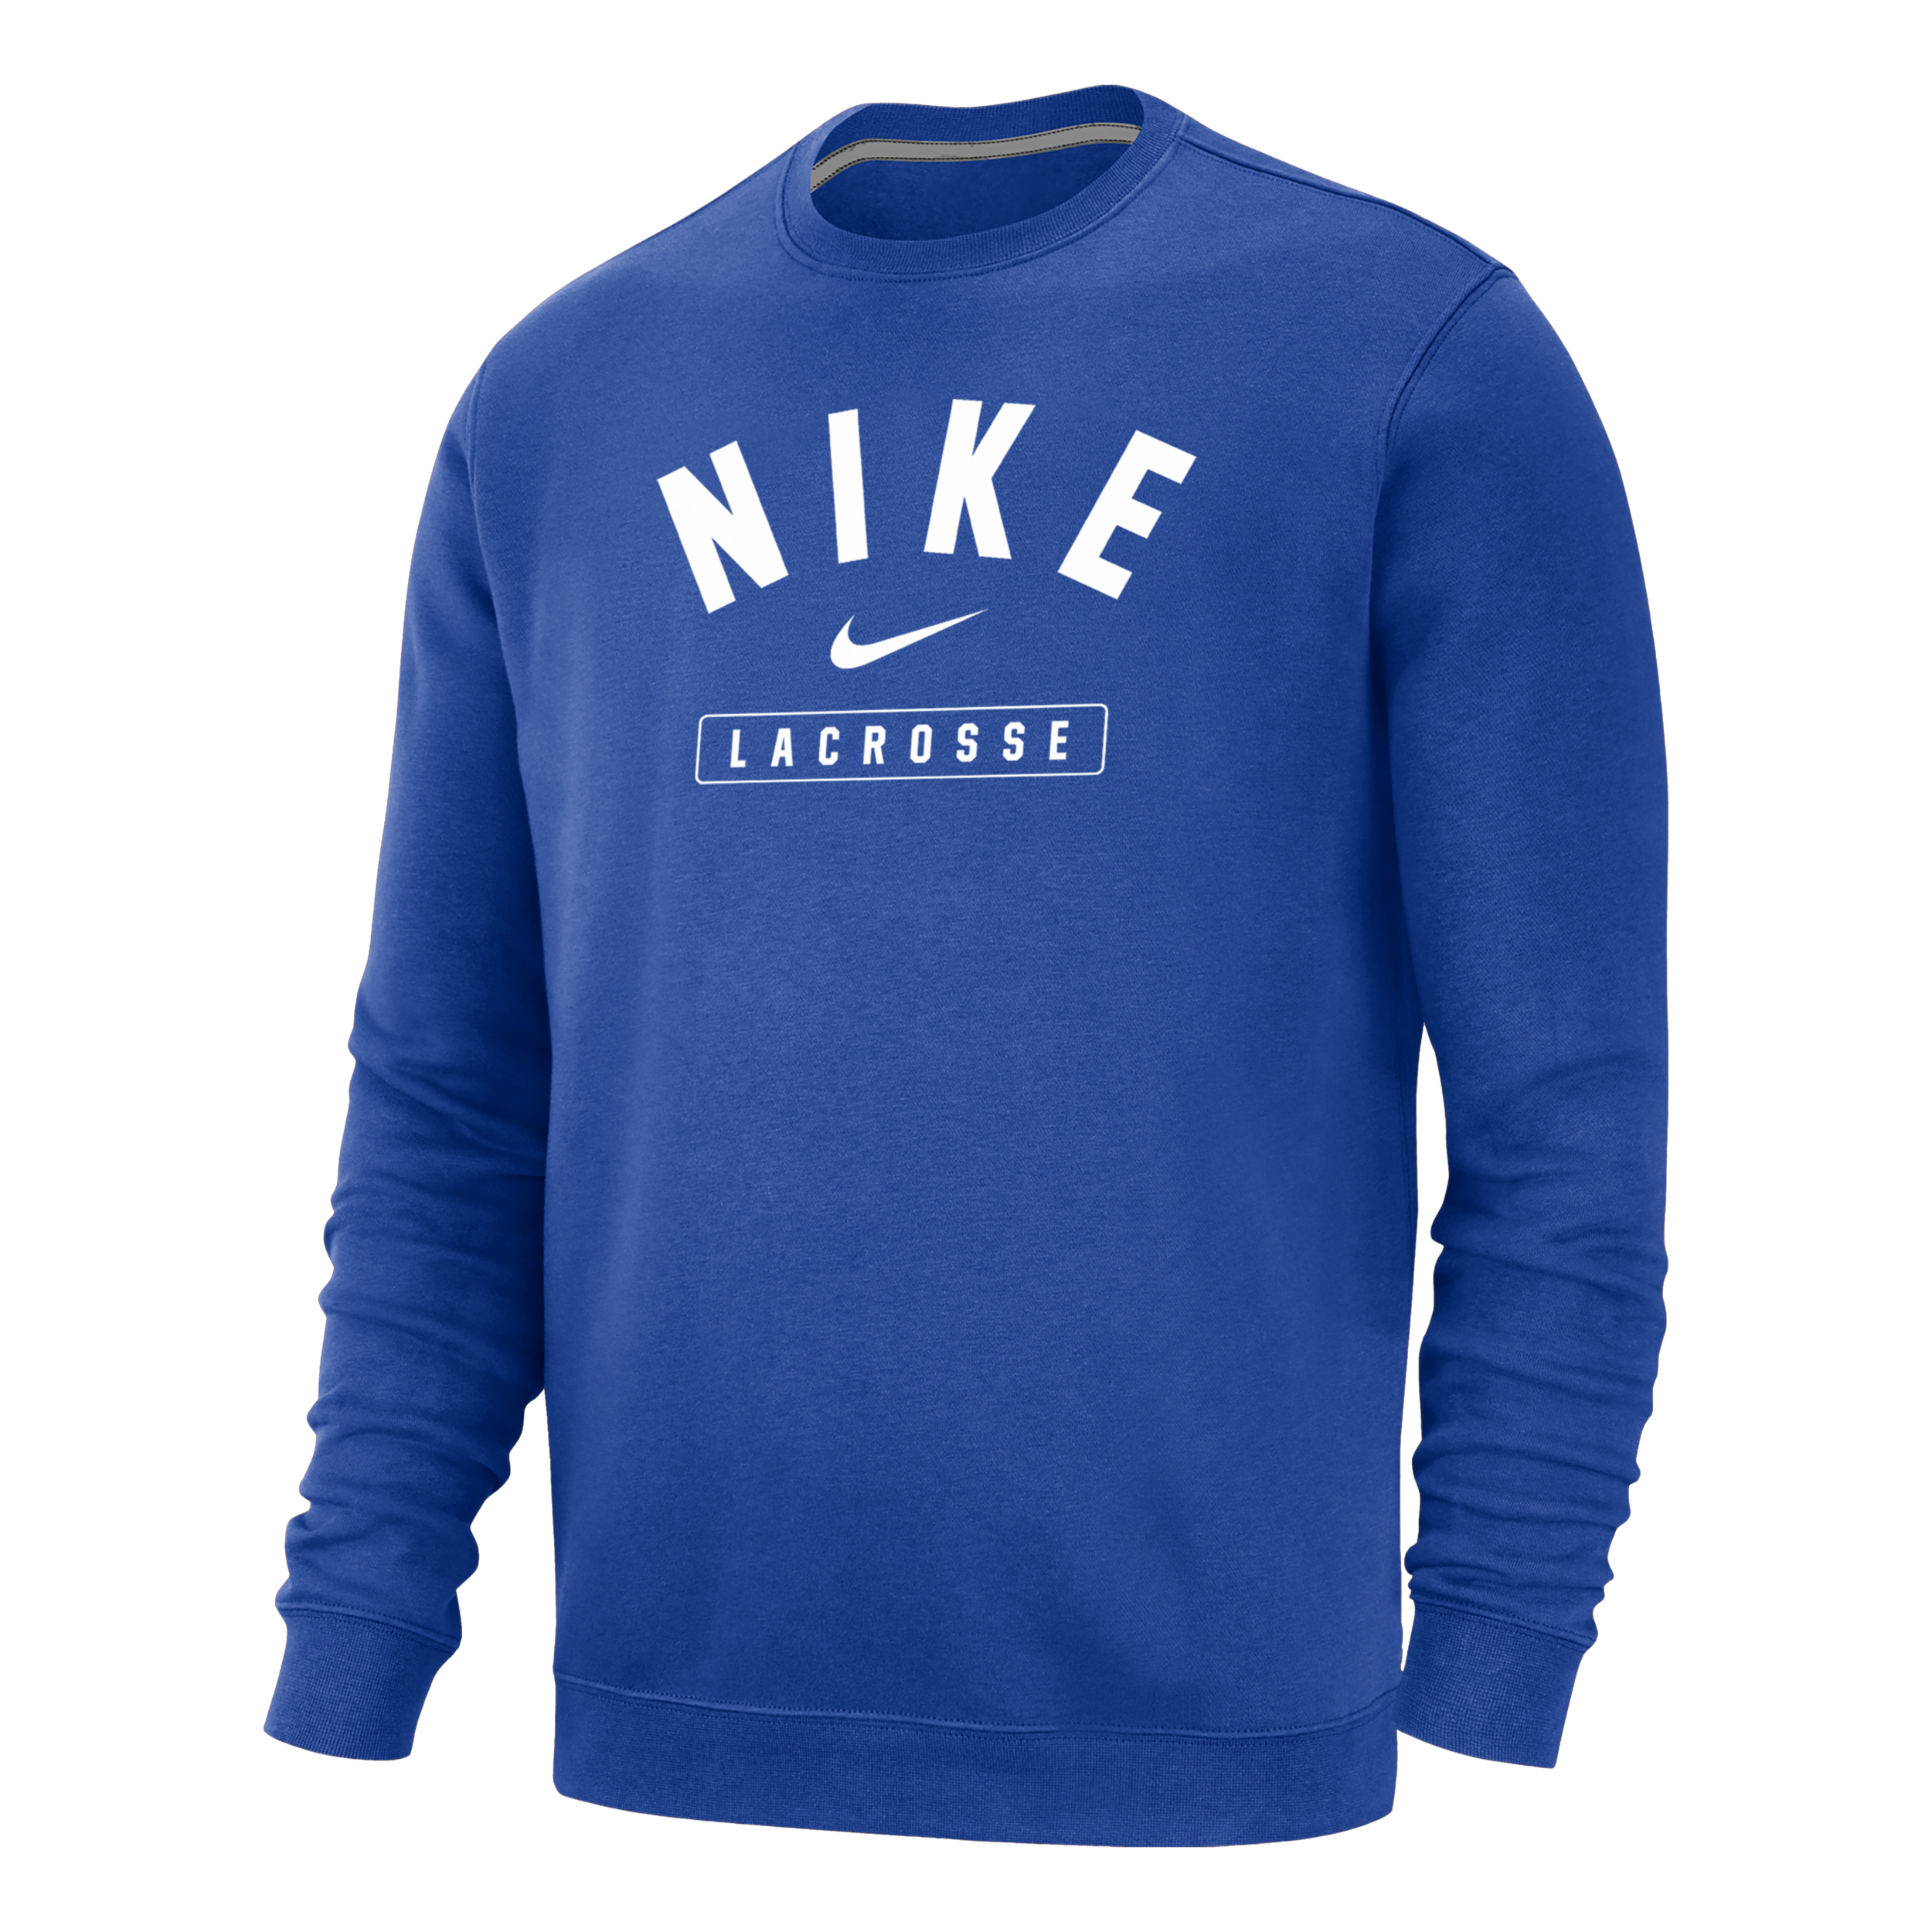 Nike Men's Lacrosse Crew-neck Sweatshirt In Blue